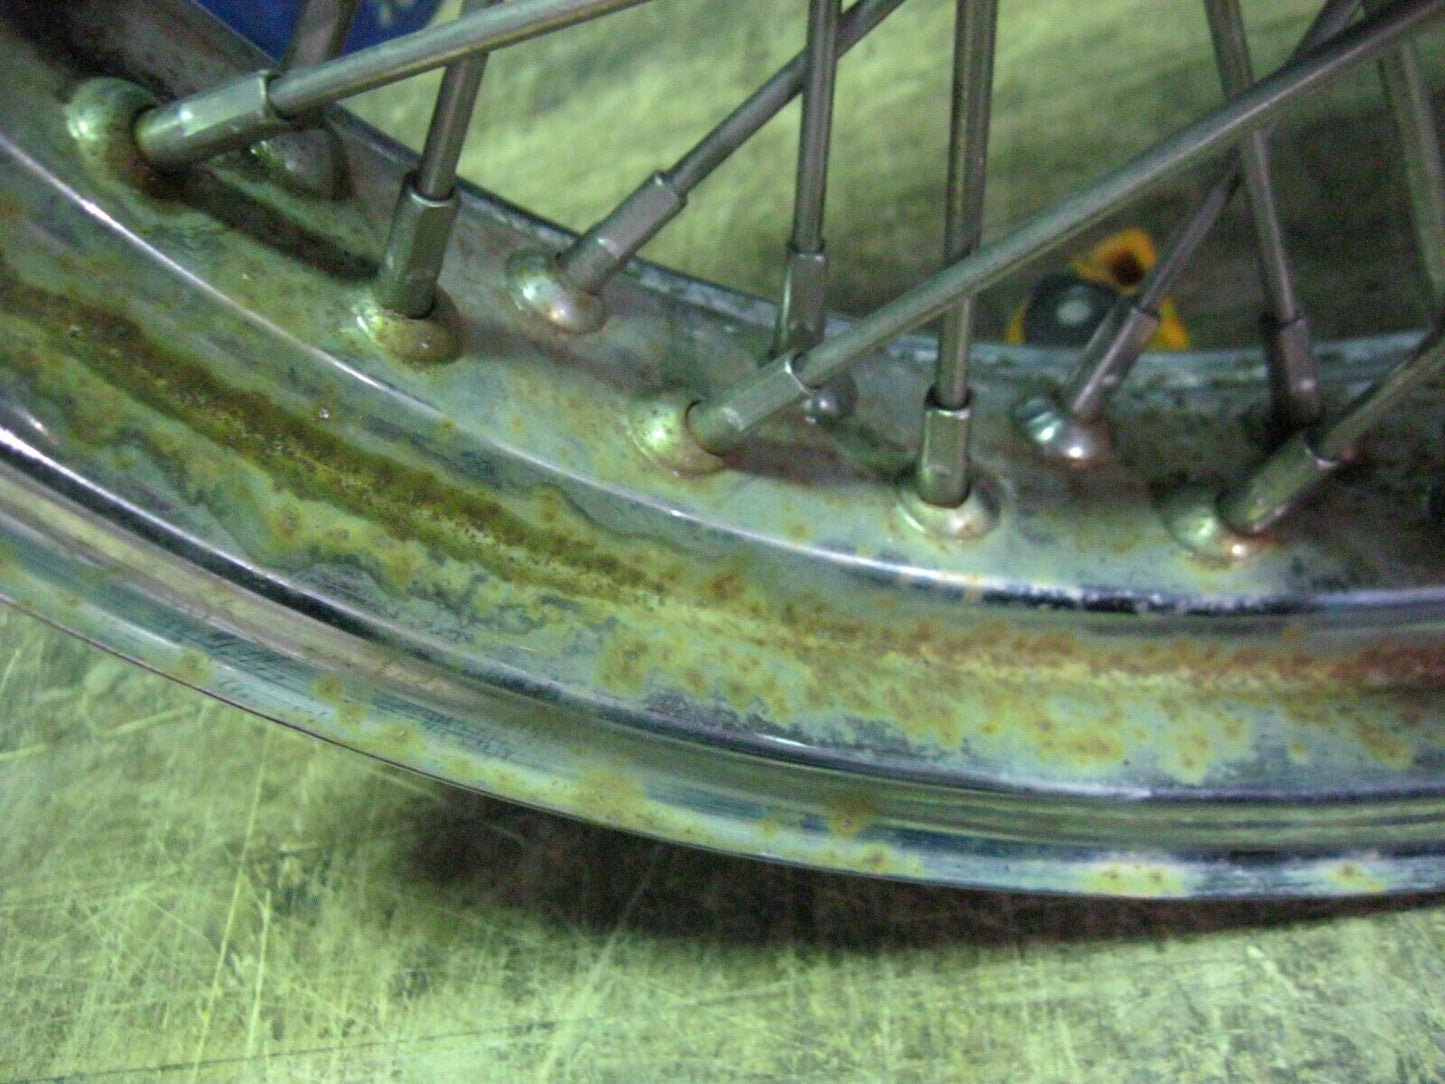 Indian 16" x 3.5" 60 Spoke Rear Wheel